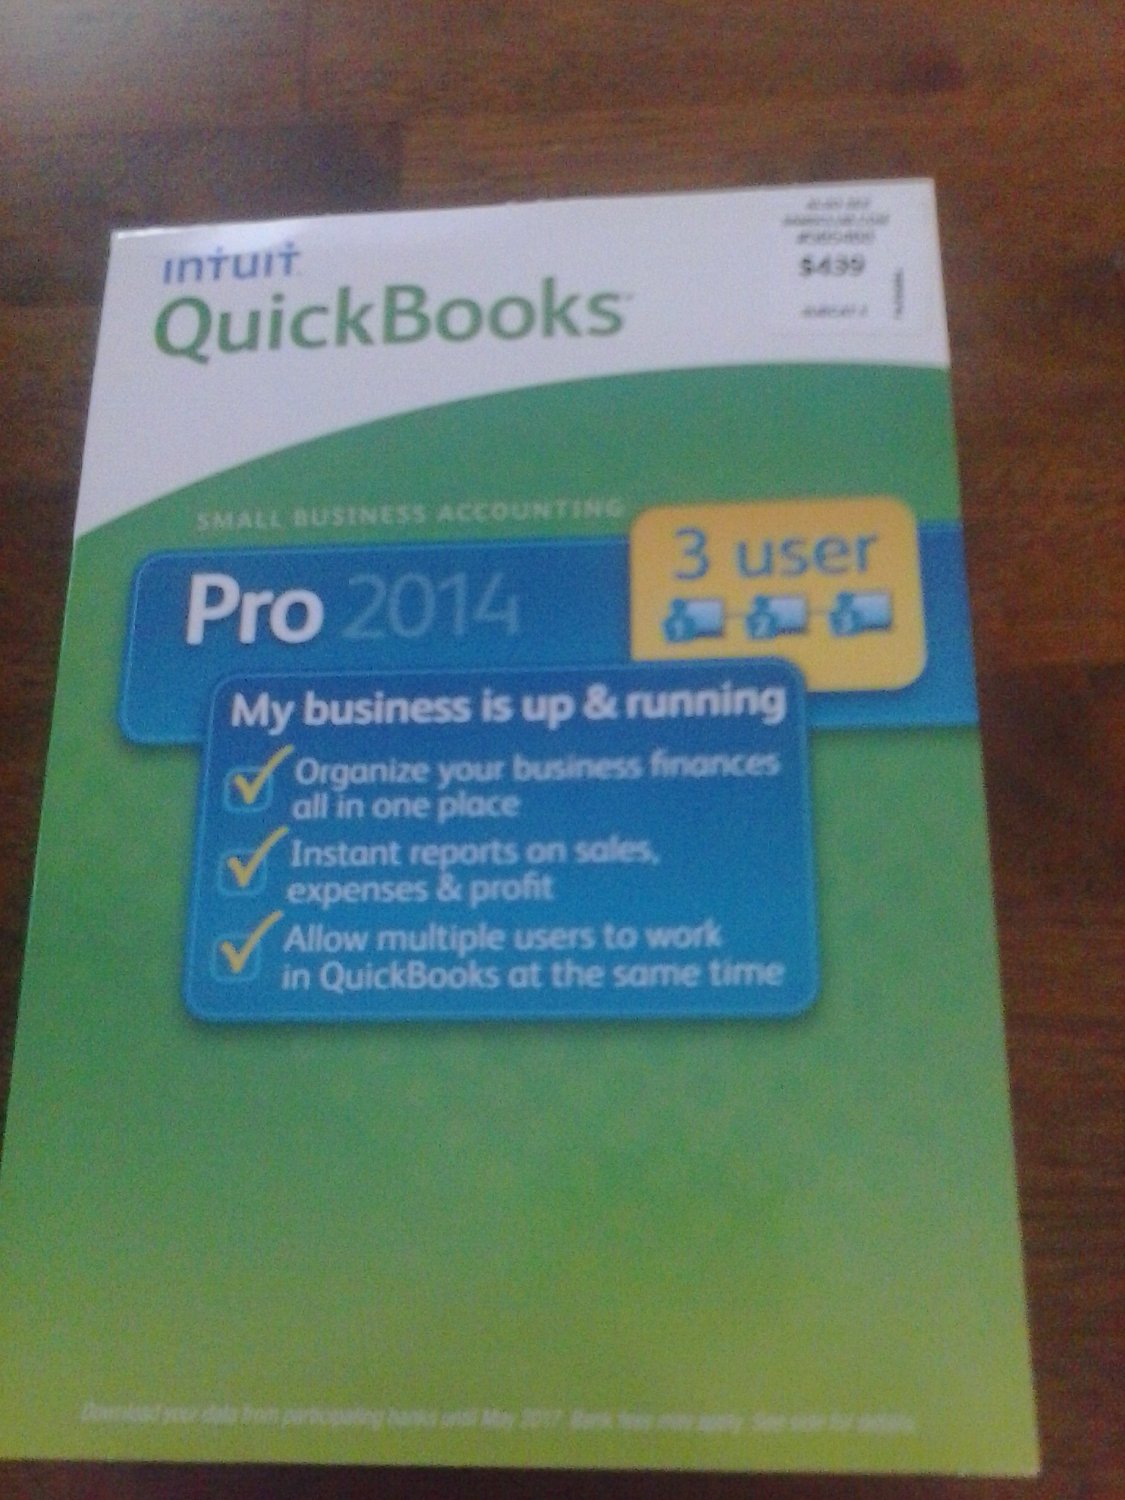 how to upgrade quickbooks pro 2014 to 2017